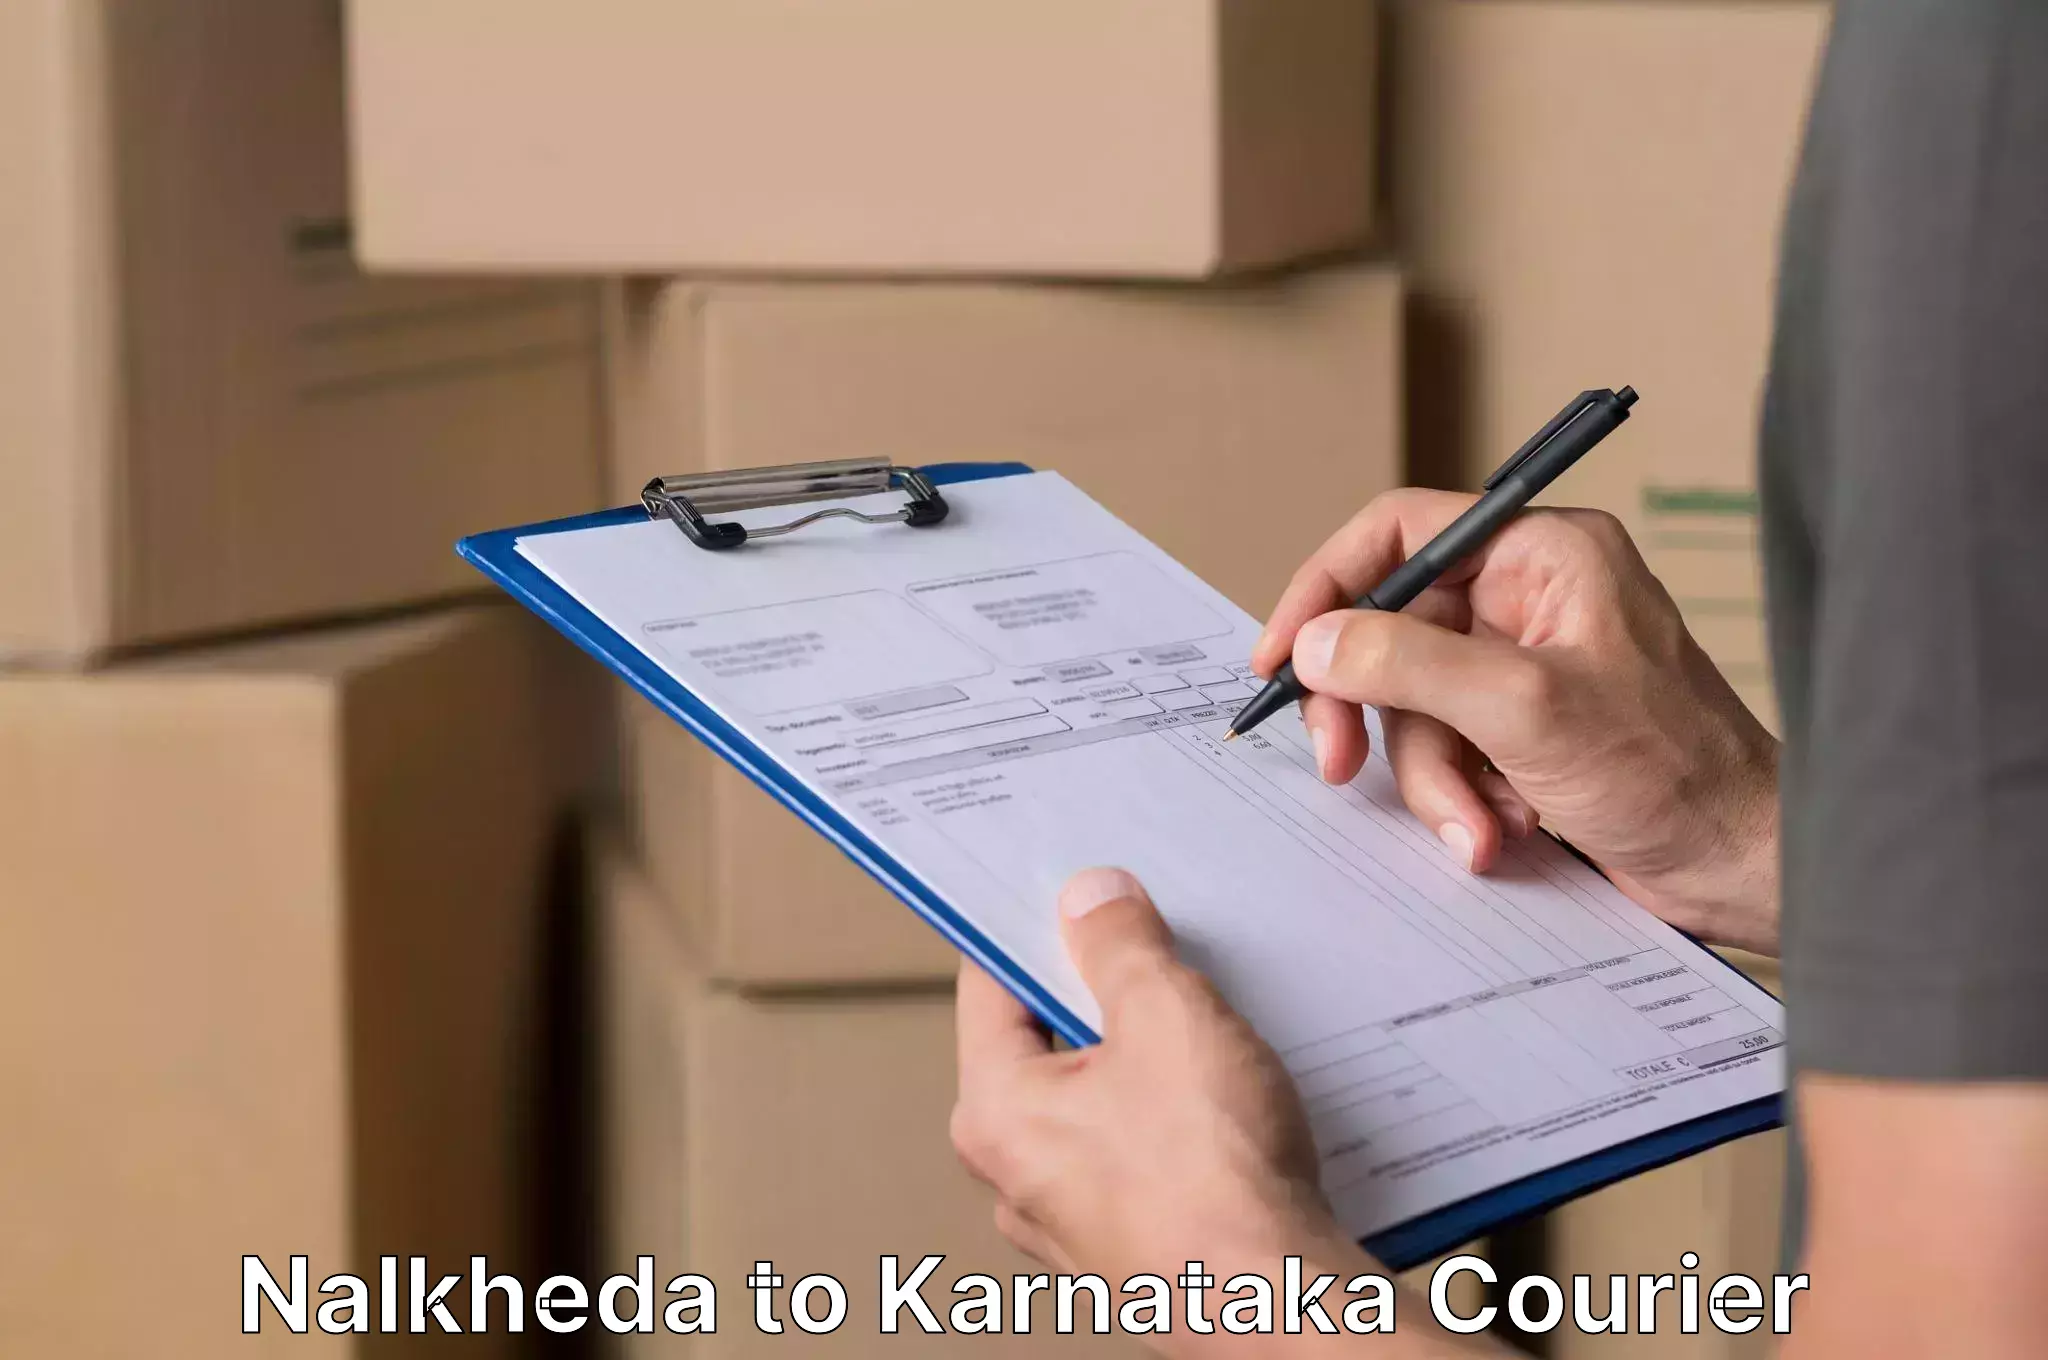 Customized furniture moving Nalkheda to Karnataka